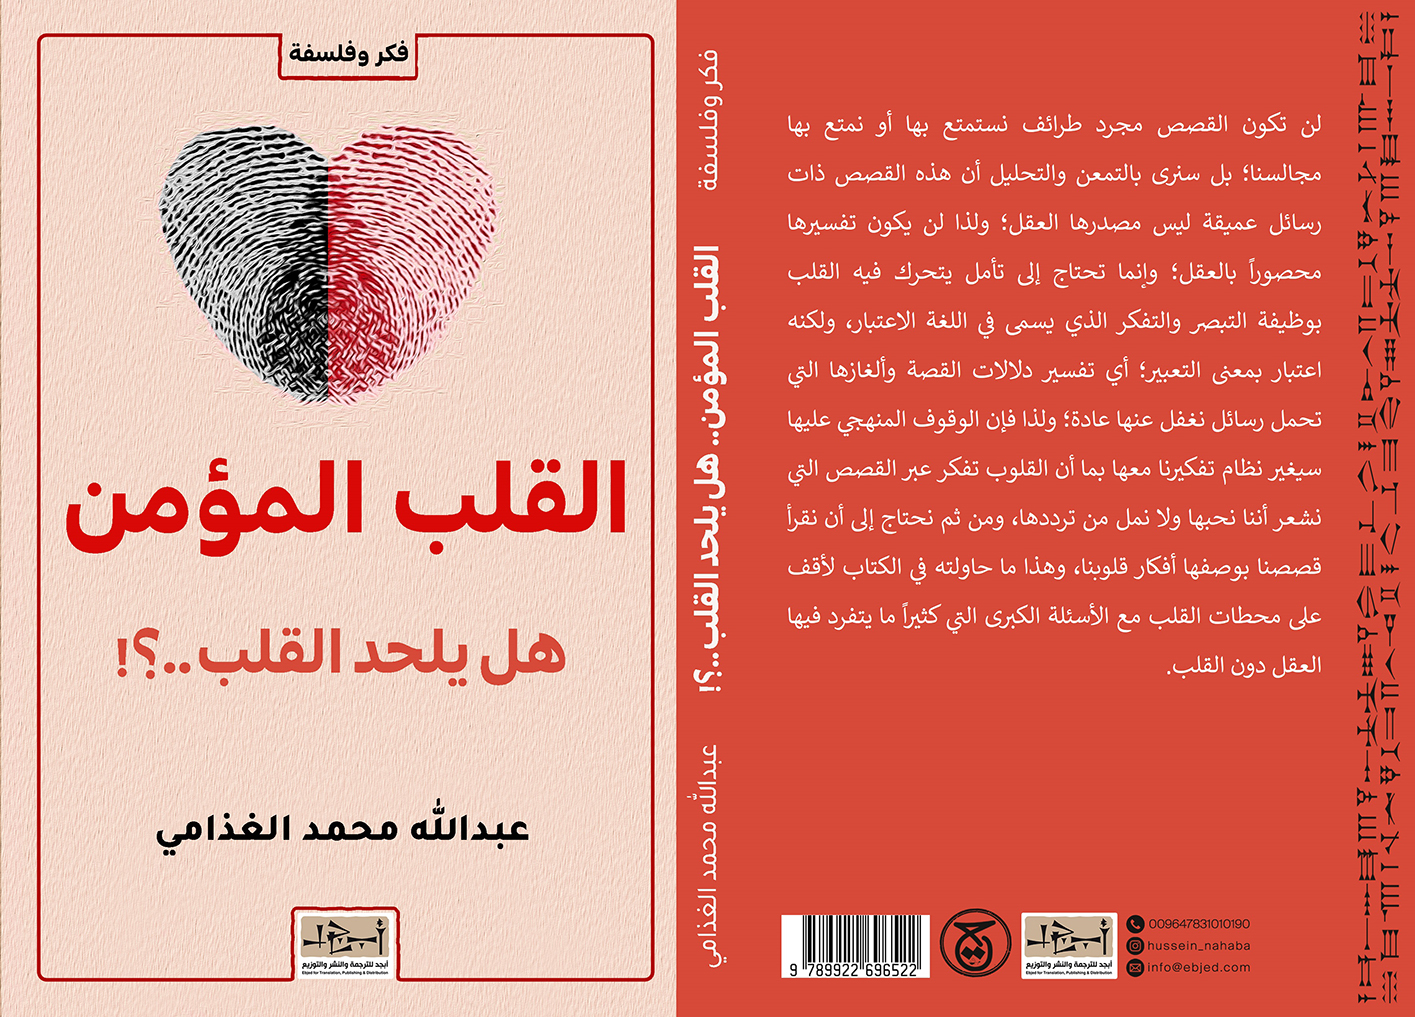 الكتاب: القلب المؤمن – هل يلحد القلب..؟ المؤلف: عبد الله محمد الغذامي التصنيف: فكر وفلسفة